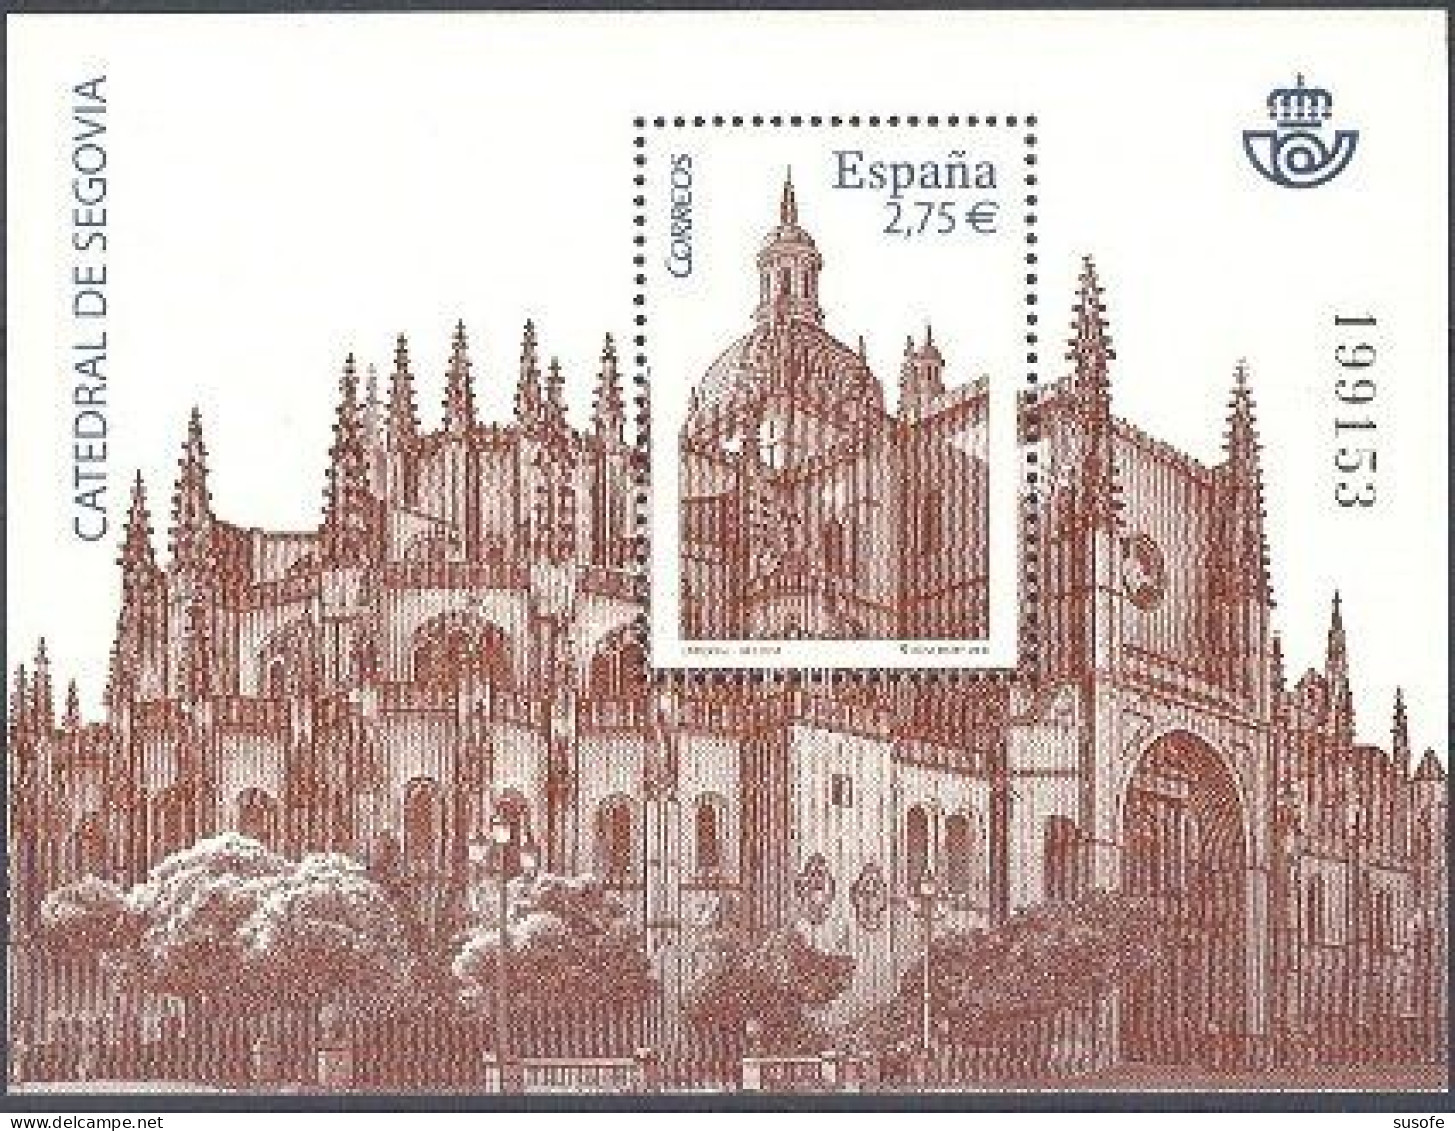 España 2010 Edifil 4580 Sello ** HB Catedral De Segovia Michel BL196 Yvert BF188 Spain Stamp Timbre Espagne Briefmarke - Nuovi